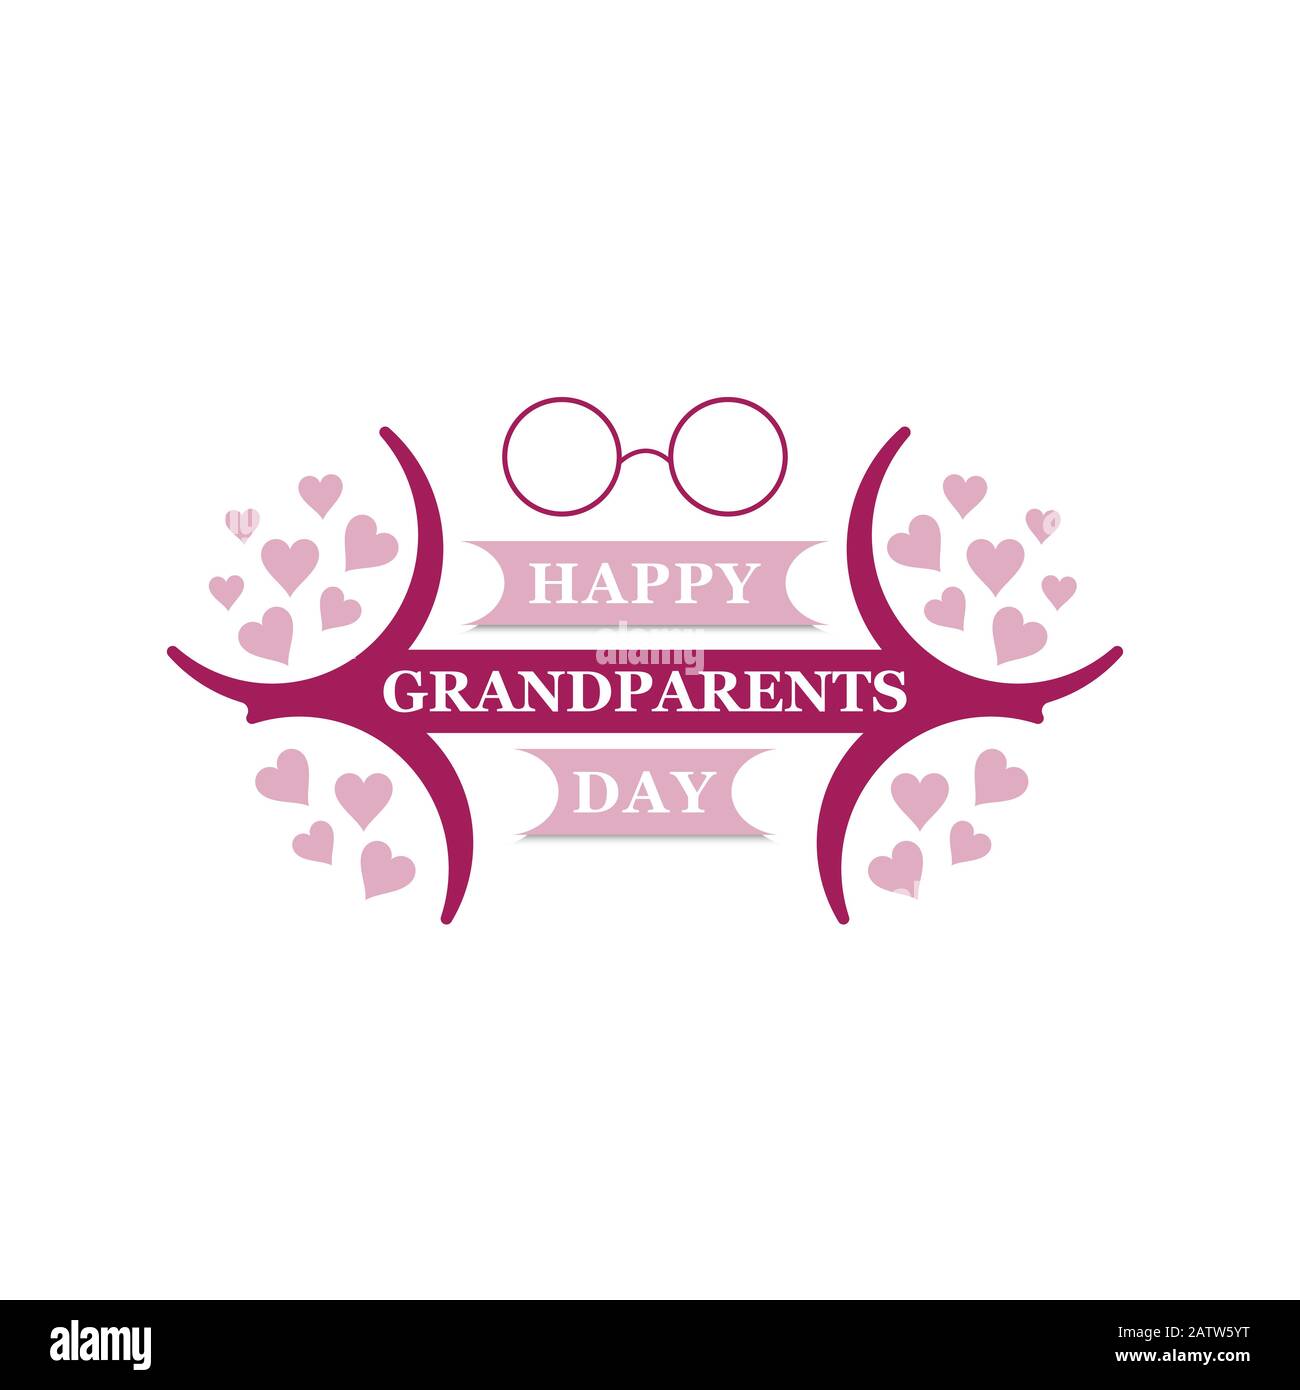 Oma- und Opa-Vektorgrafiken. Design für Großeltern Tag Grußkarte, Flyer, Poster, Banner oder T-Shirt. Ältere Personen. Stock Vektor